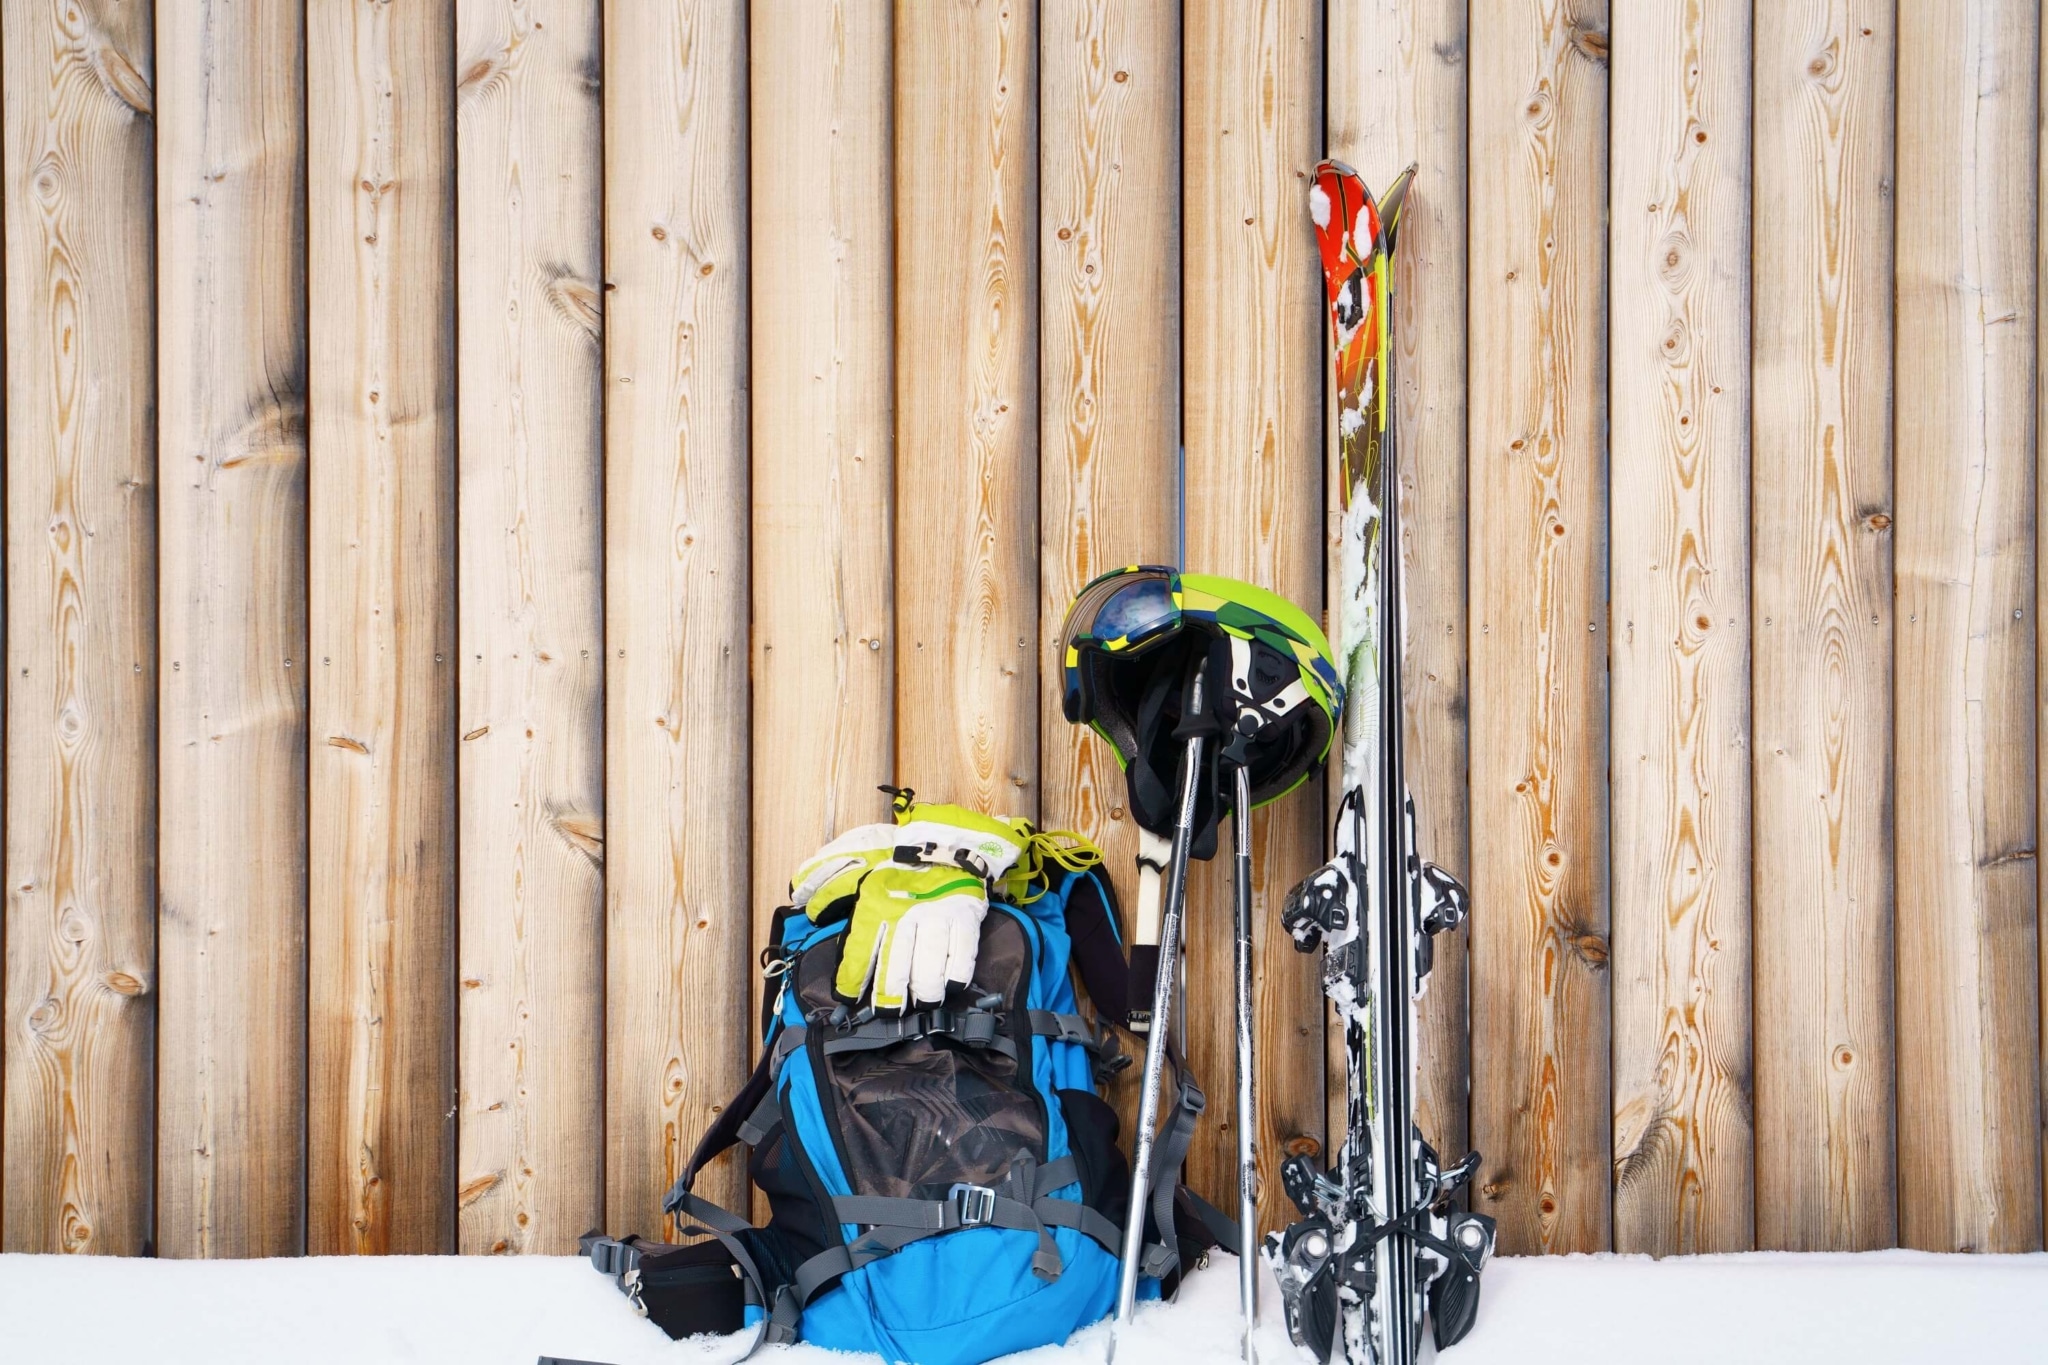 Skiausrüstung steht im Schnee vor einer Holzhütte